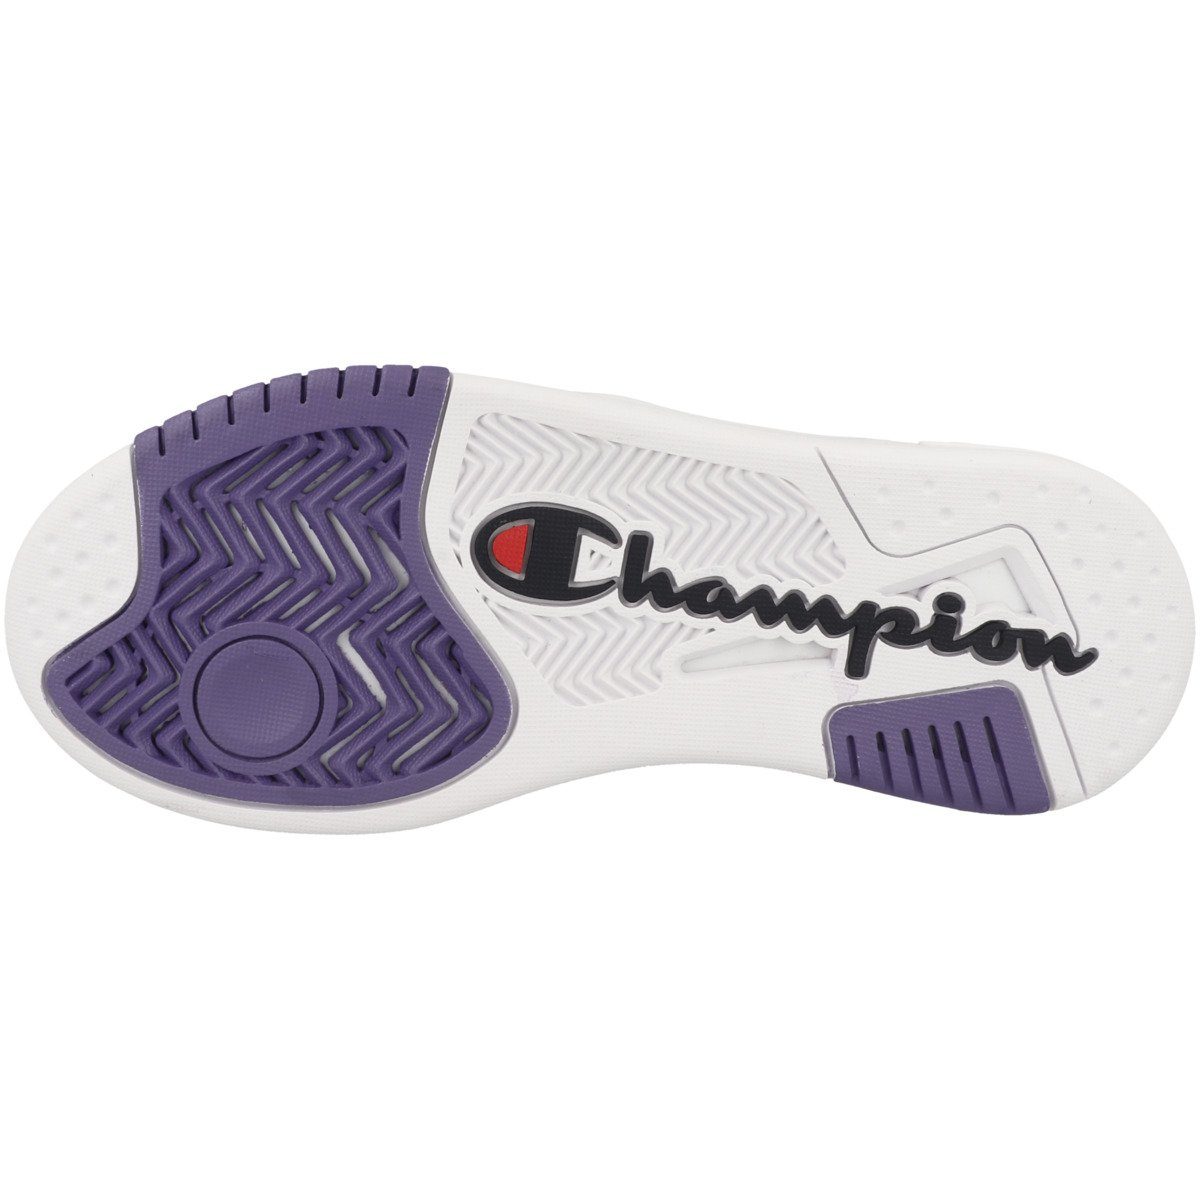 Sneaker Cut Z80 white-violet Perforation Low Shoe Damen Champion